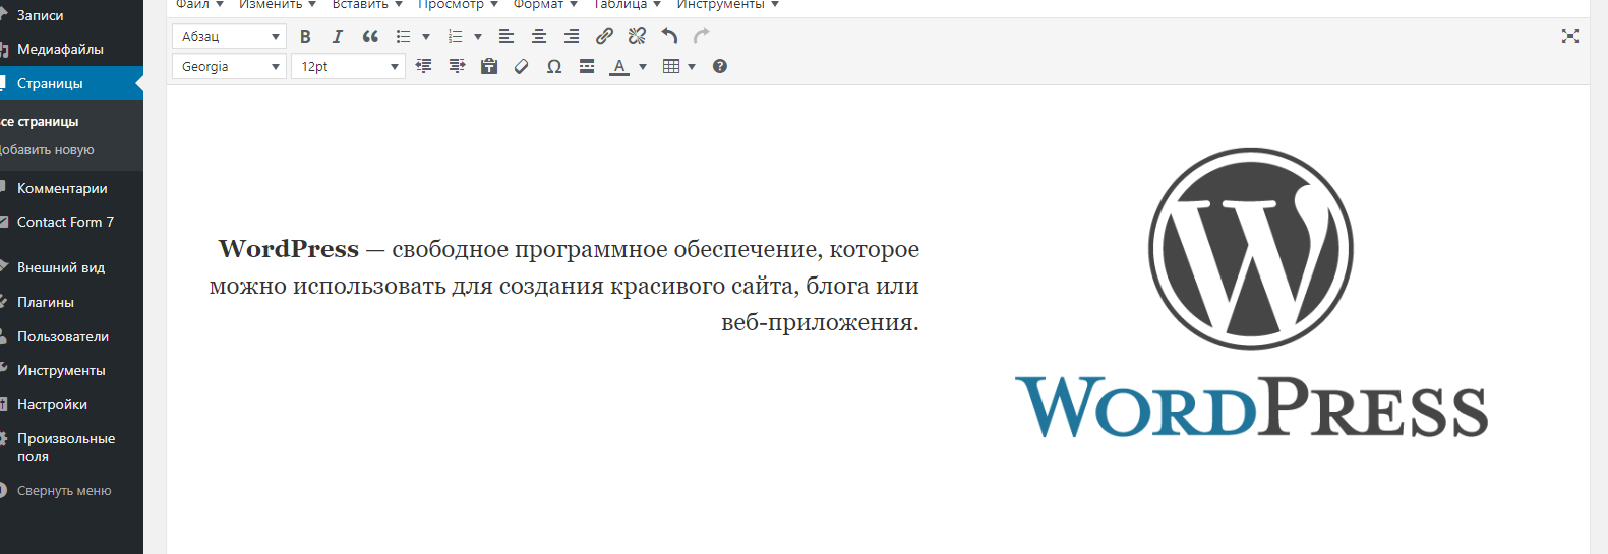 Плагин сайт в разработке wordpress